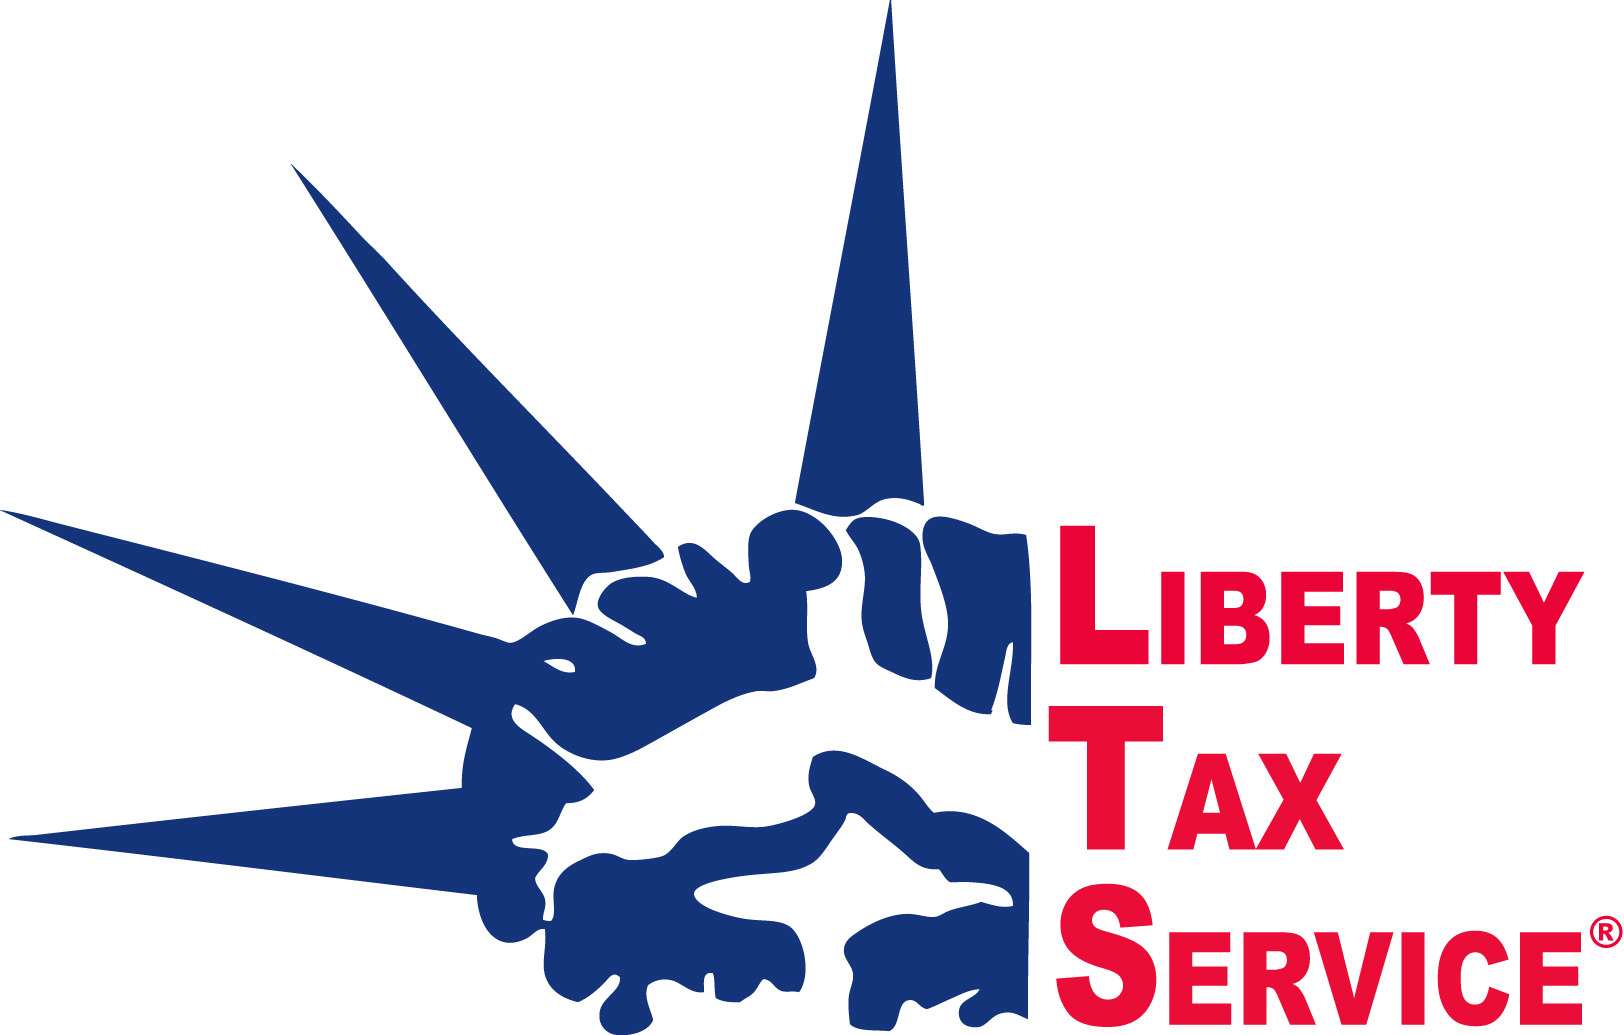 Tax Preparers and Tax Attorneys Pro Tax LLC dba Liberty Tax Service in Chesapeake VA